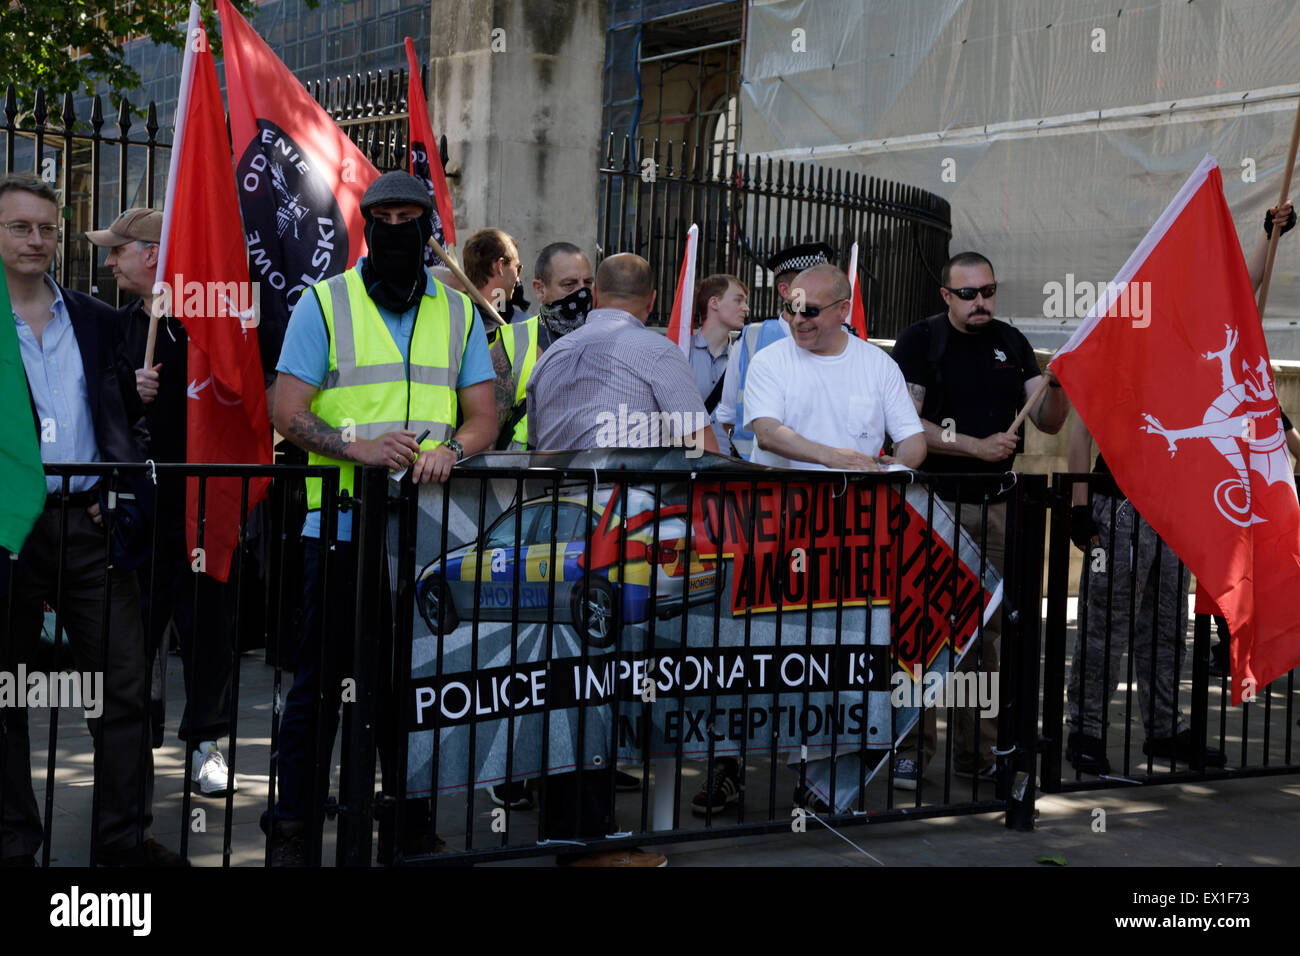 Westminster, London, UK, 4. Juli 2015. Protest gegen die "Verjudung" von London vom weit rechten Flügel Gruppe Credit: fantastische Kaninchen/Alamy Live News Stockfoto